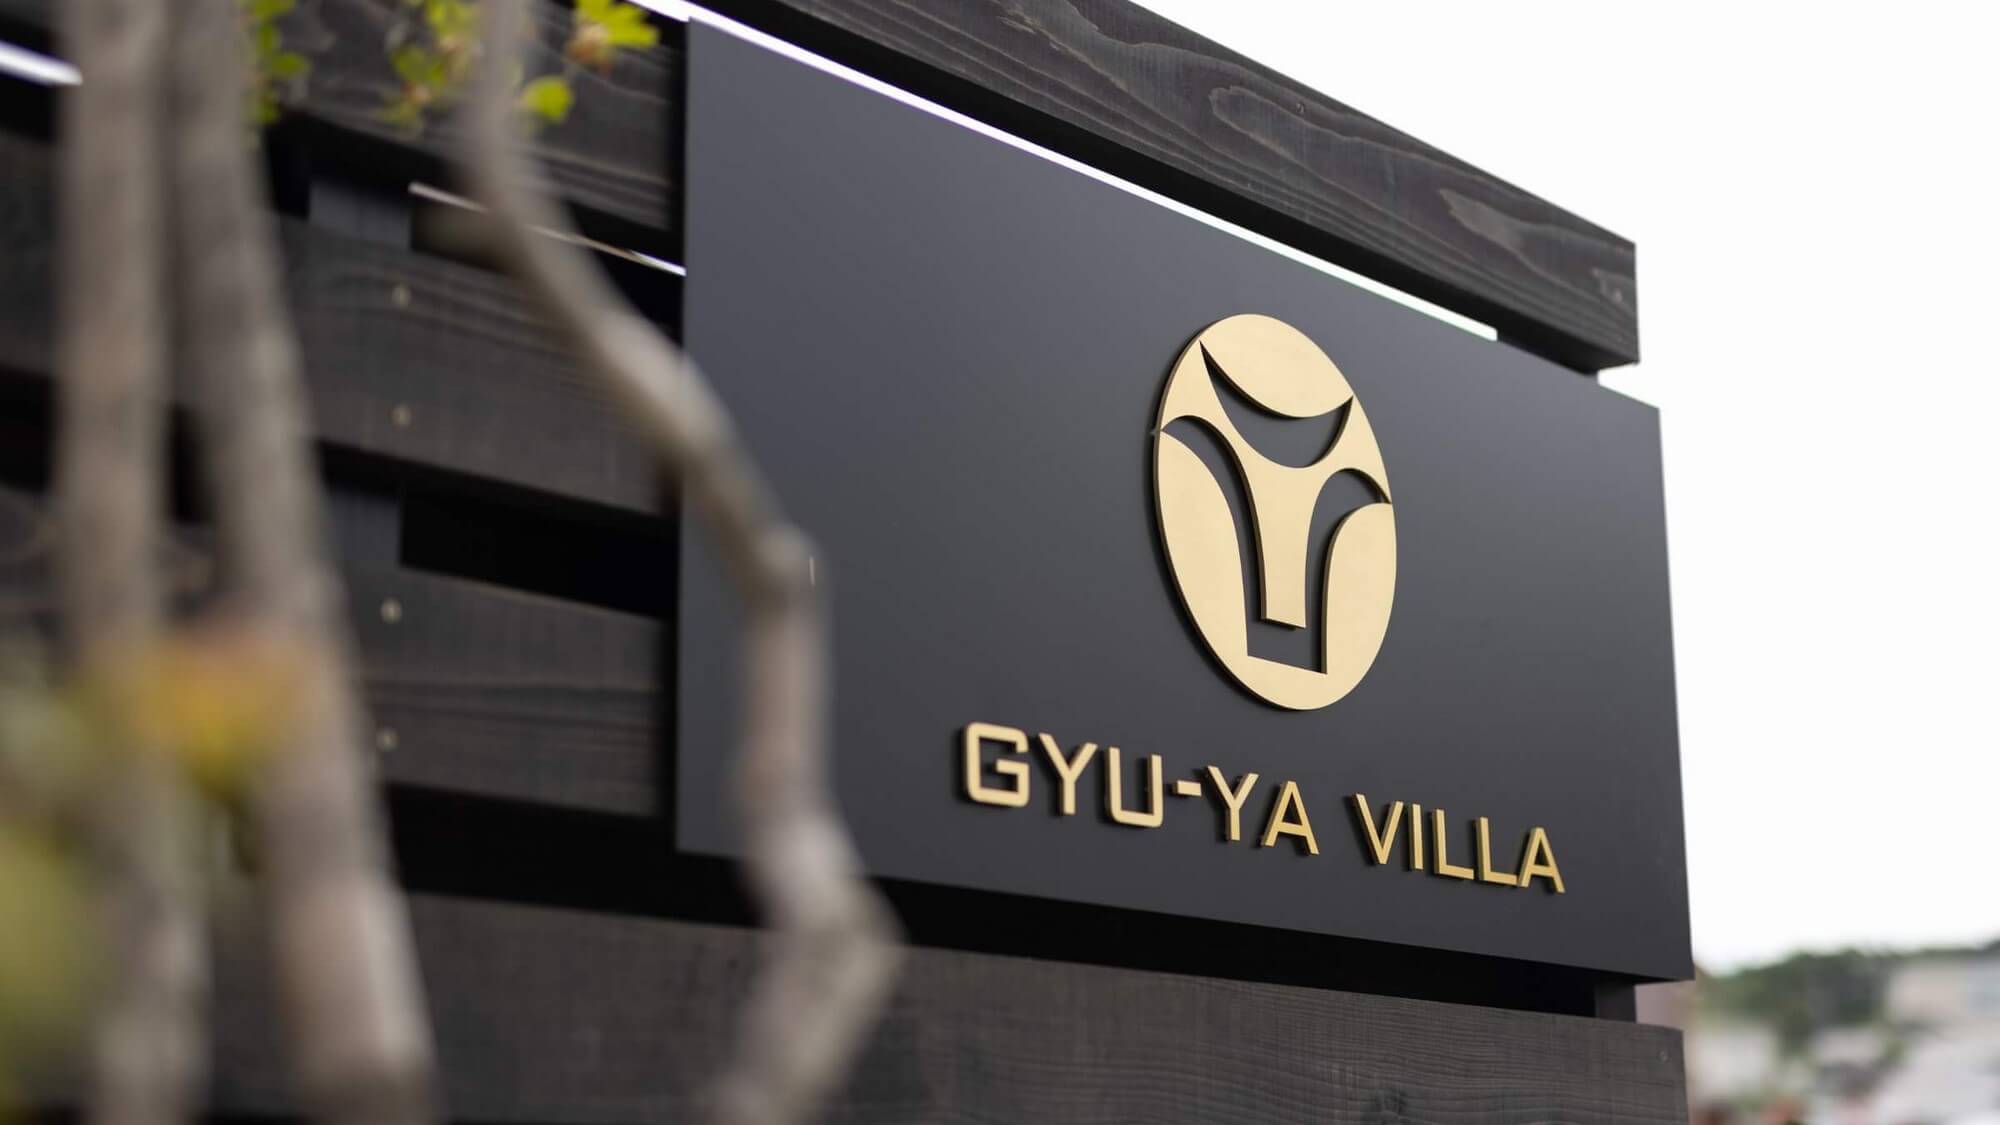 【GYU-YAVILLA】本格フィンランド式サウナを備えたプライベートヴィラが誕生。